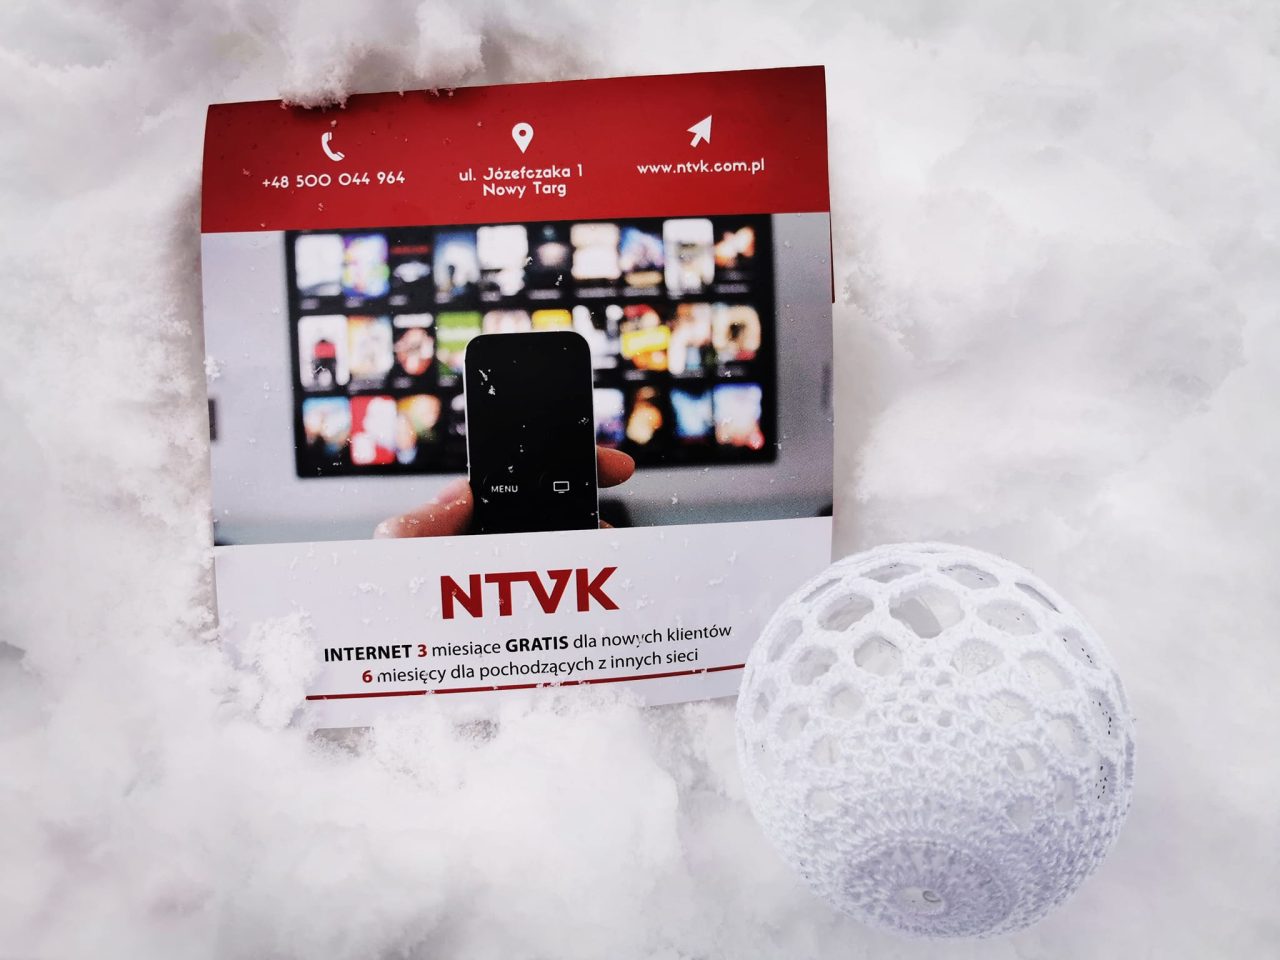 Specjalna, zimowa promocja NTVK!